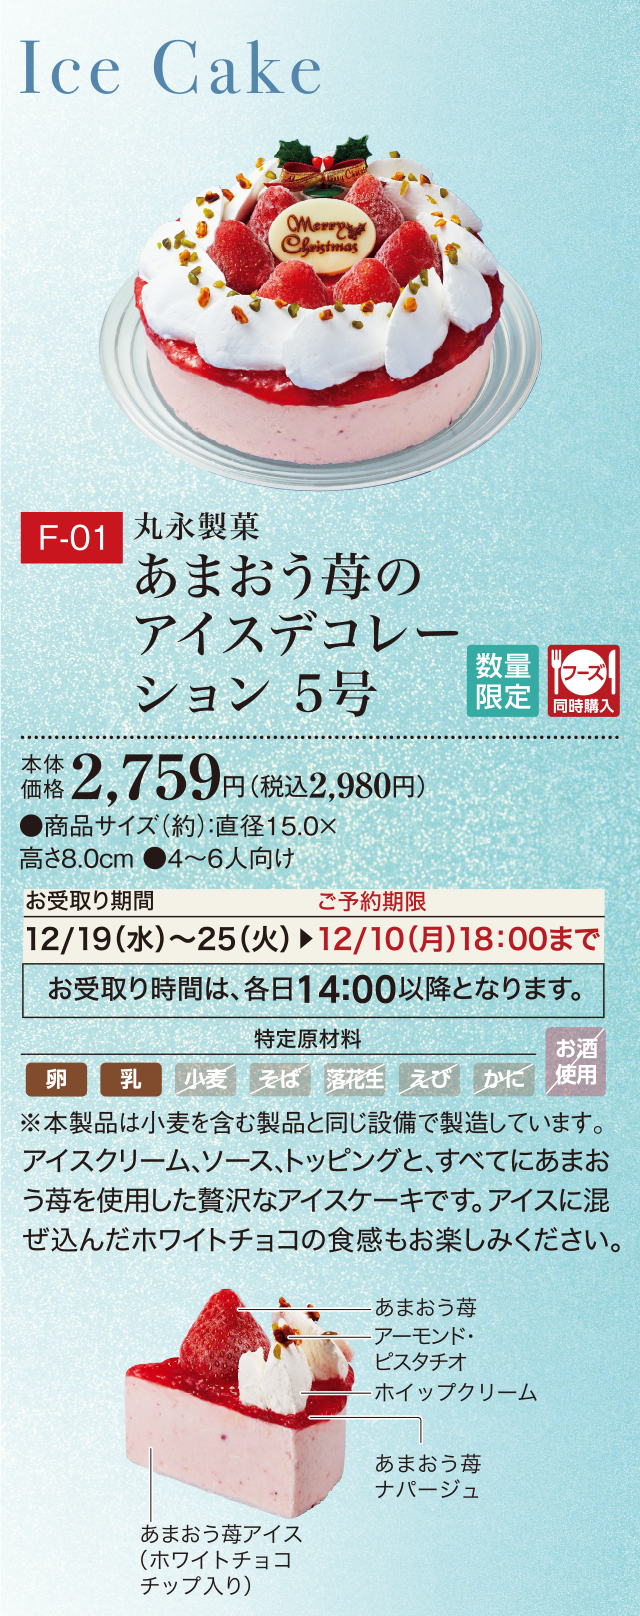 あまおう苺のアイスデコレーション 5号 本体価格 2,759円(税込2,980円)